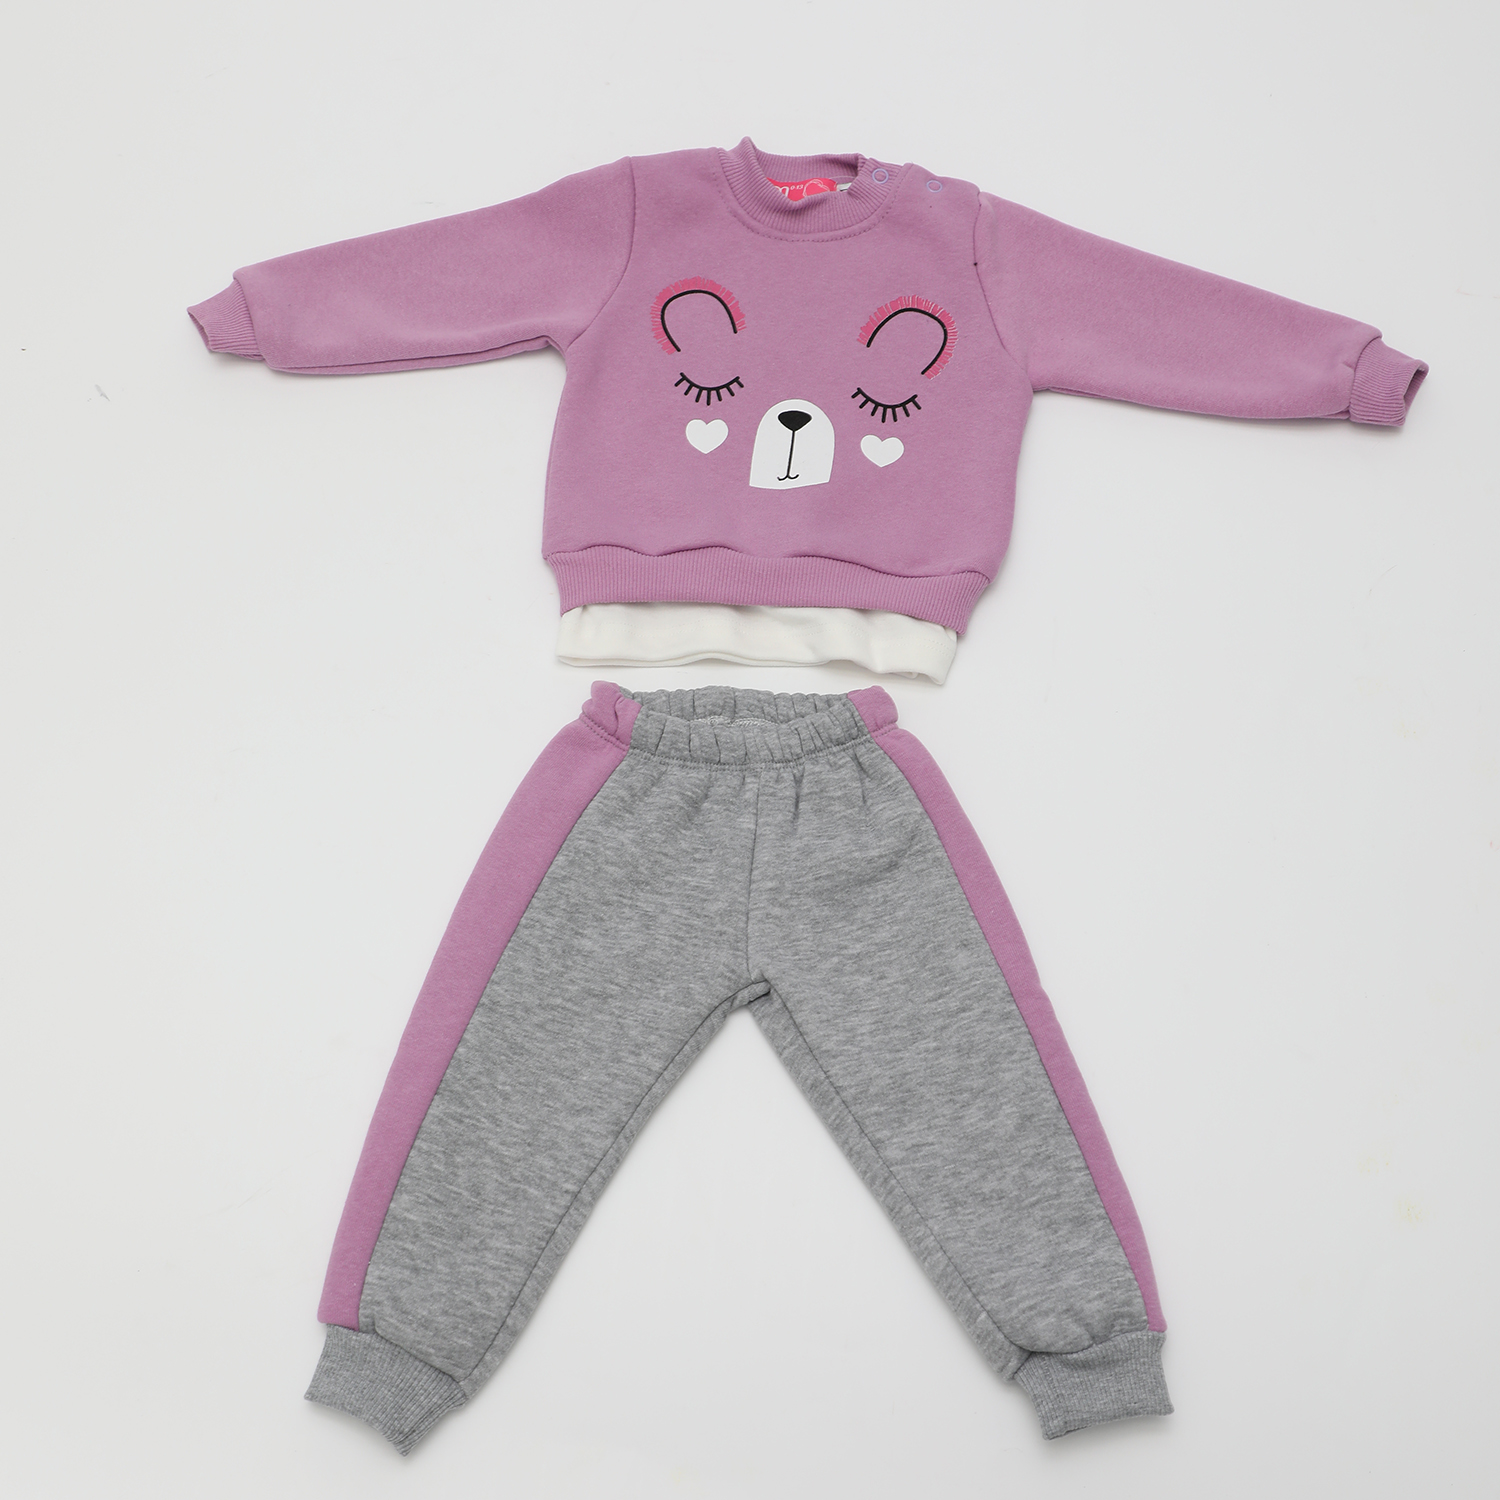 Παιδικά/Baby/Ρούχα/Σετ SAM 0-13 - Βρεφικό σετ φόρμας SAM 0-13 μοβ γκρι